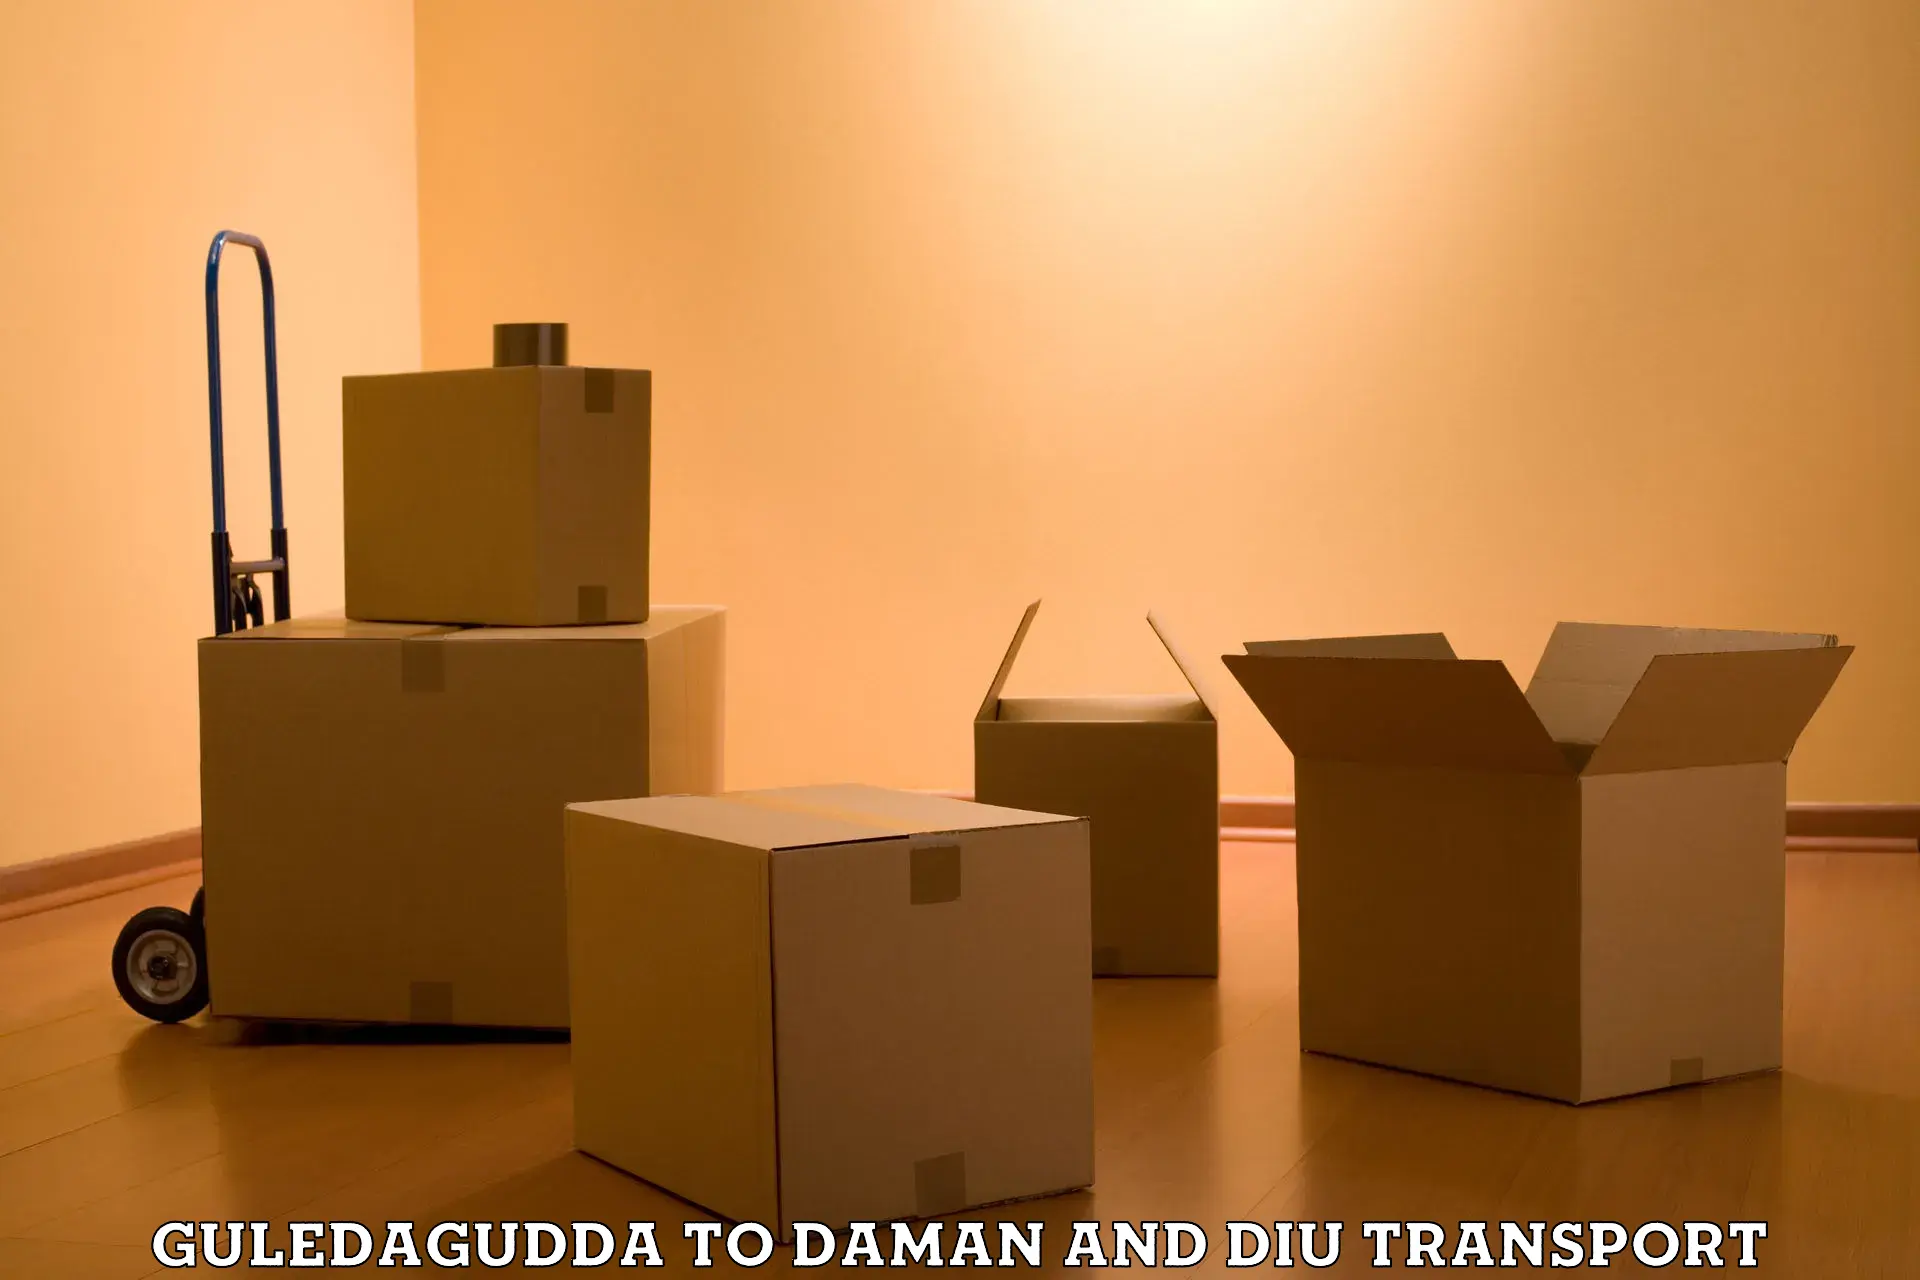 Interstate transport services Guledagudda to Daman